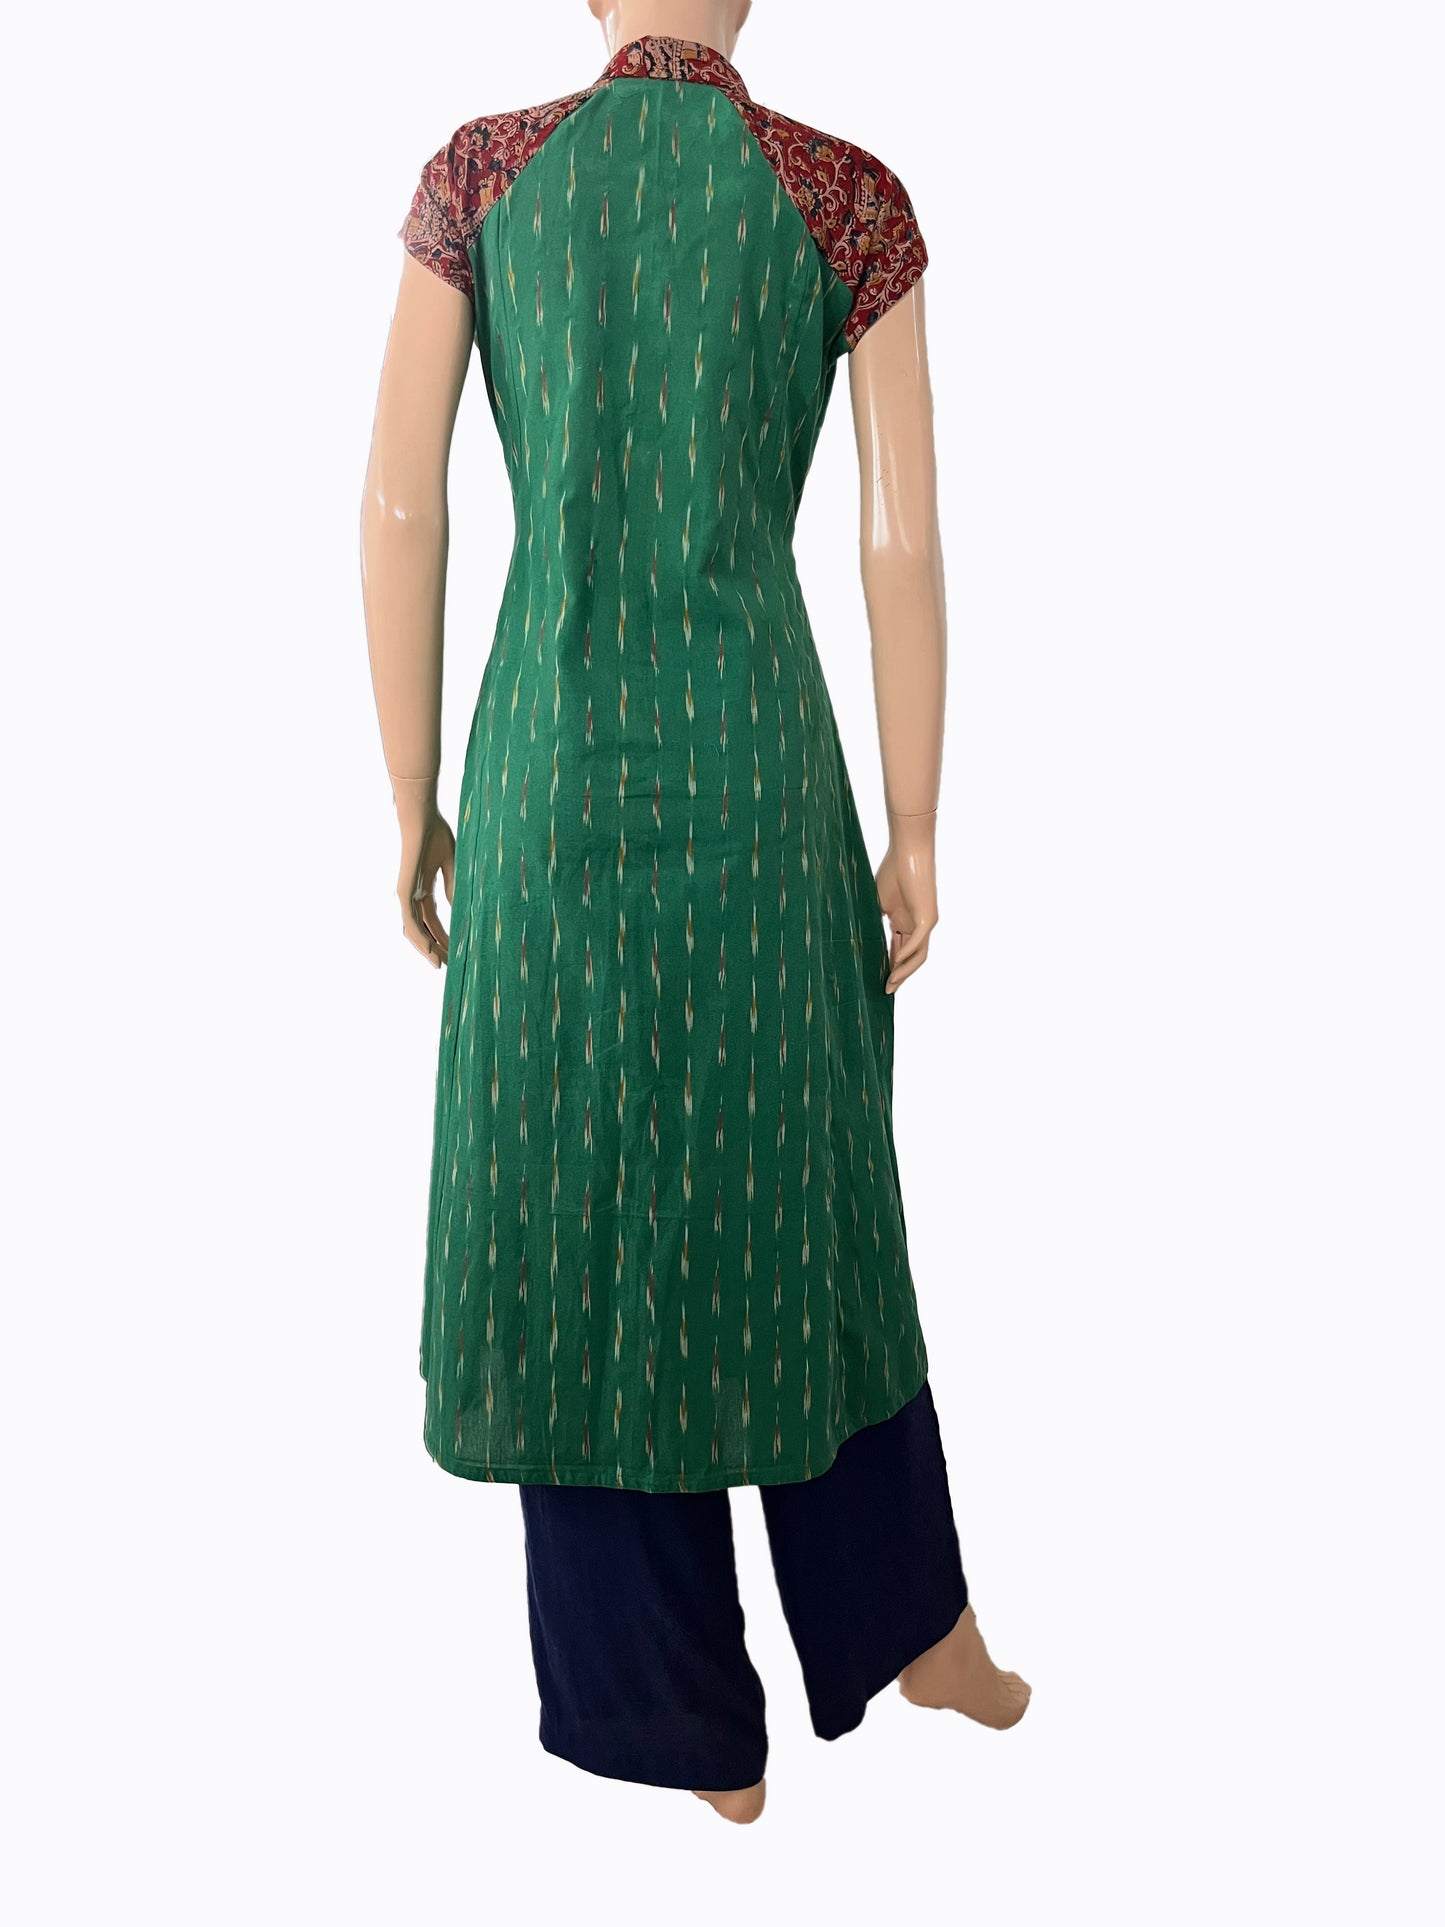 Ikat Cotton Paneled A line Kurta with Shirt Collar, Mega Sleeves & Kalamkari Patches,   Green,  KI1032